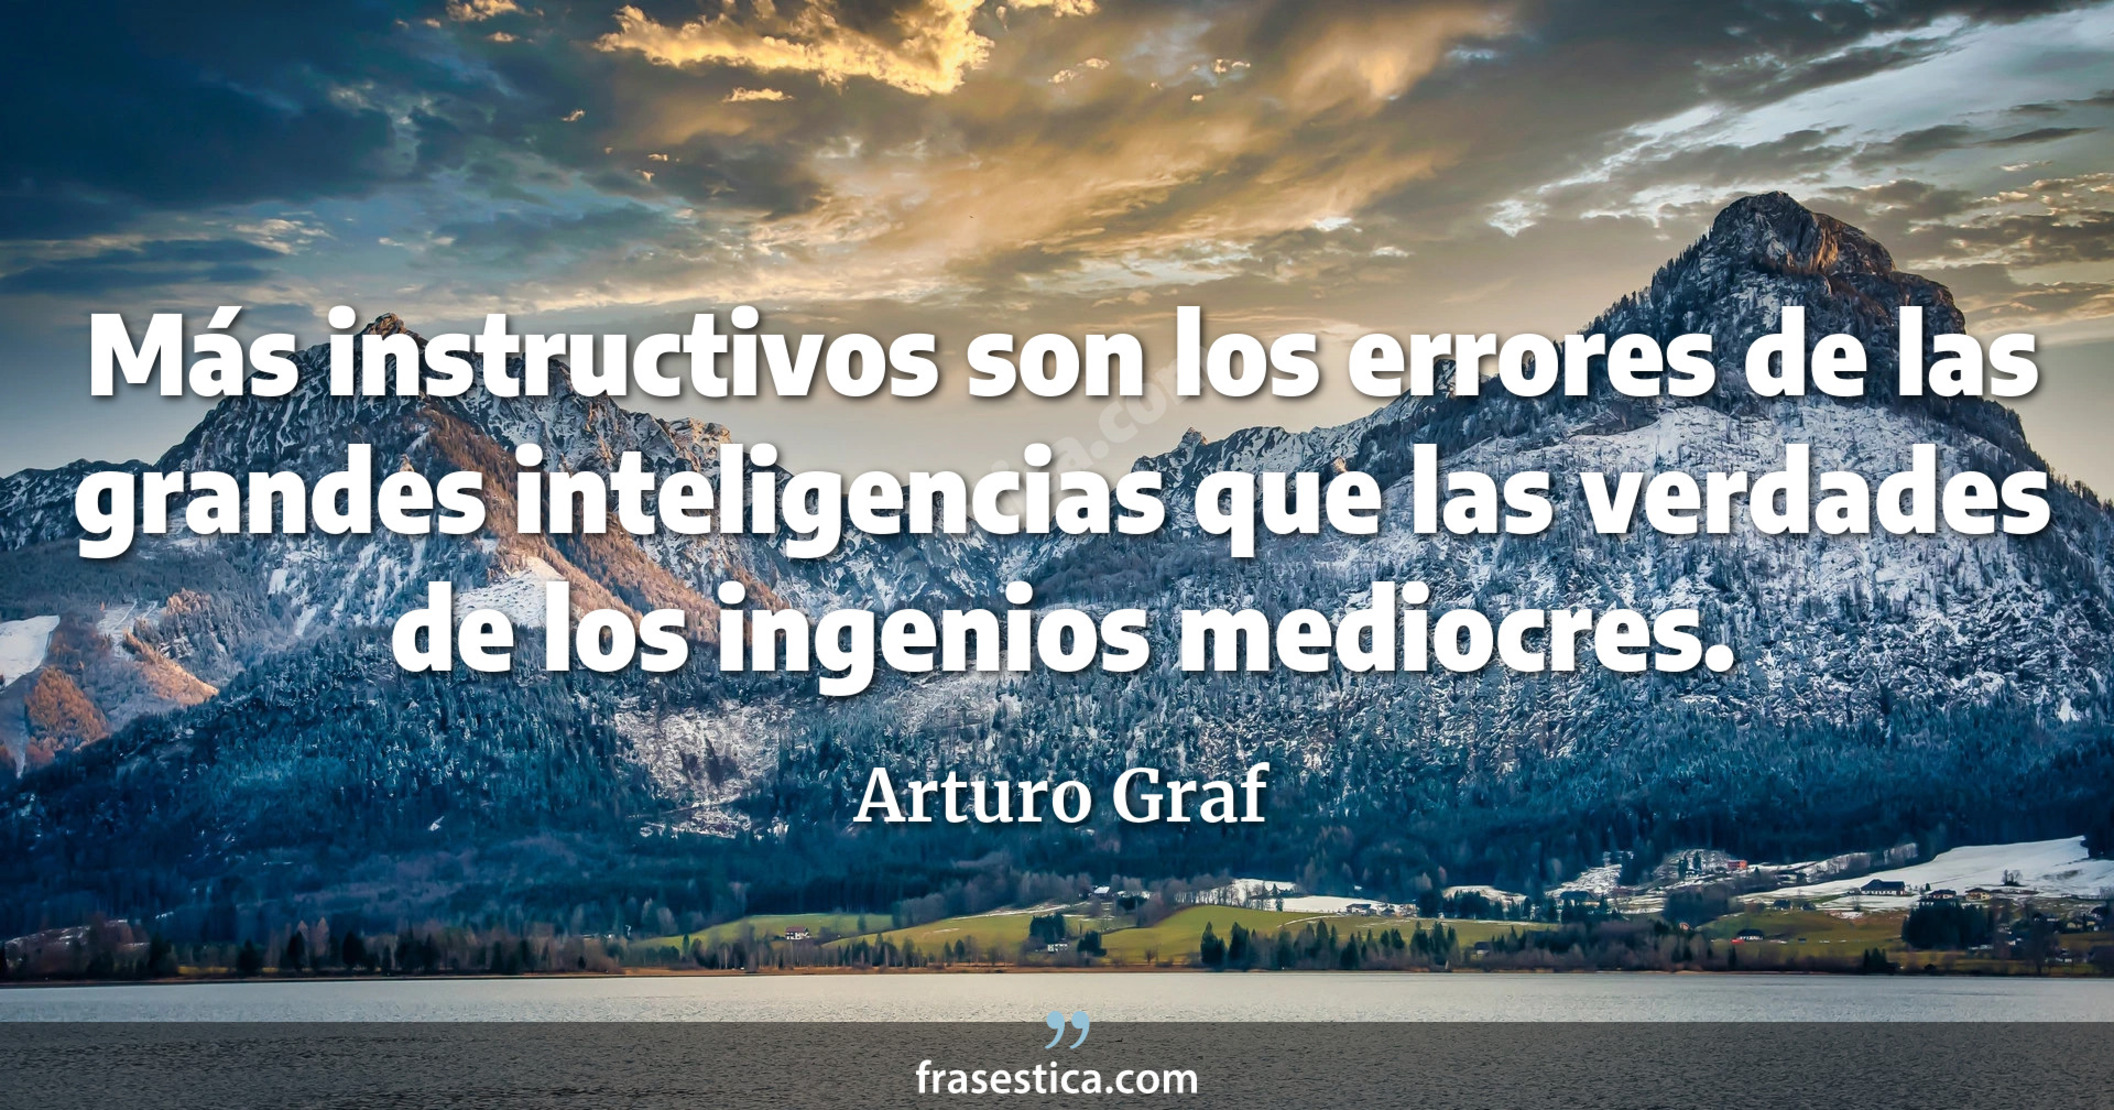 Más instructivos son los errores de las grandes inteligencias que las verdades de los ingenios mediocres. - Arturo Graf